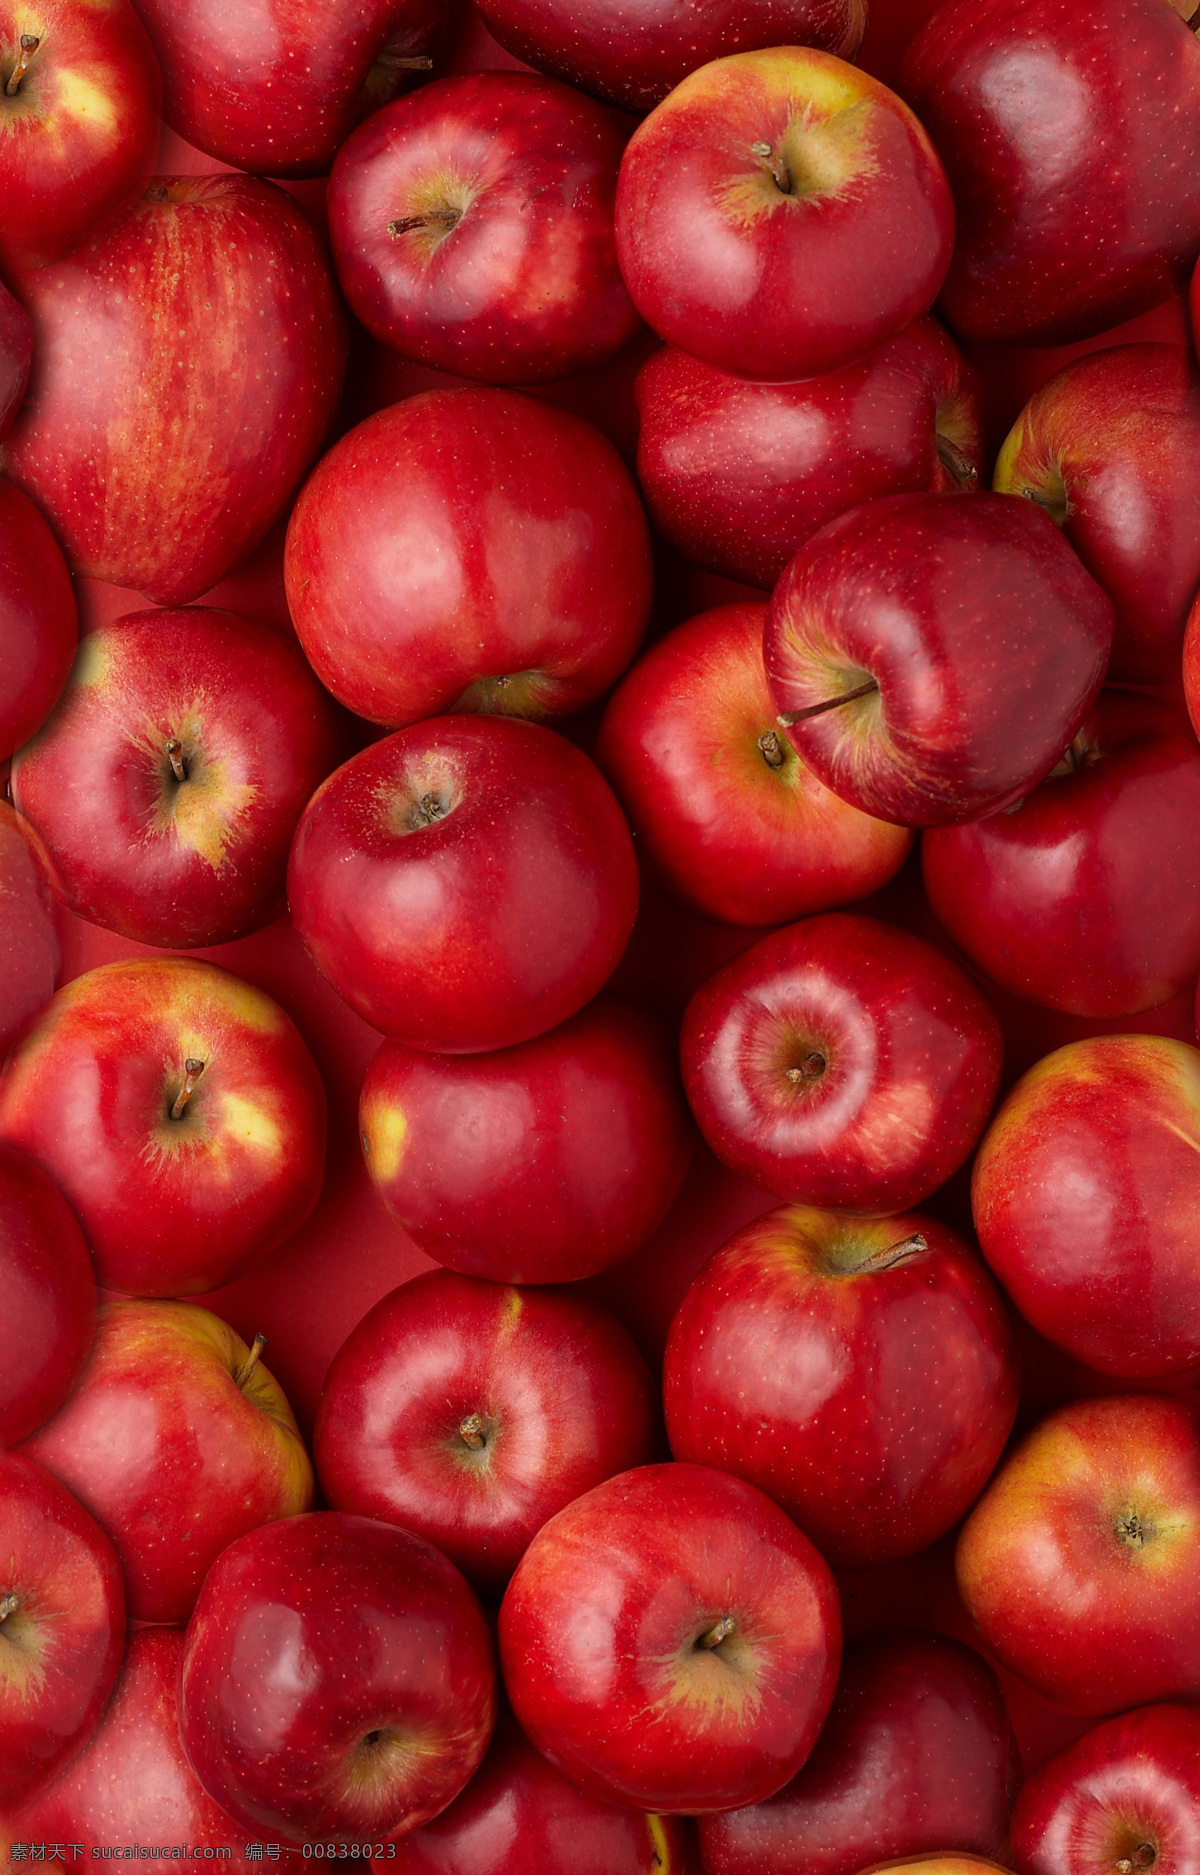 新鲜 红色 苹果 水果 食物 餐厅美食 其他类别 生活百科